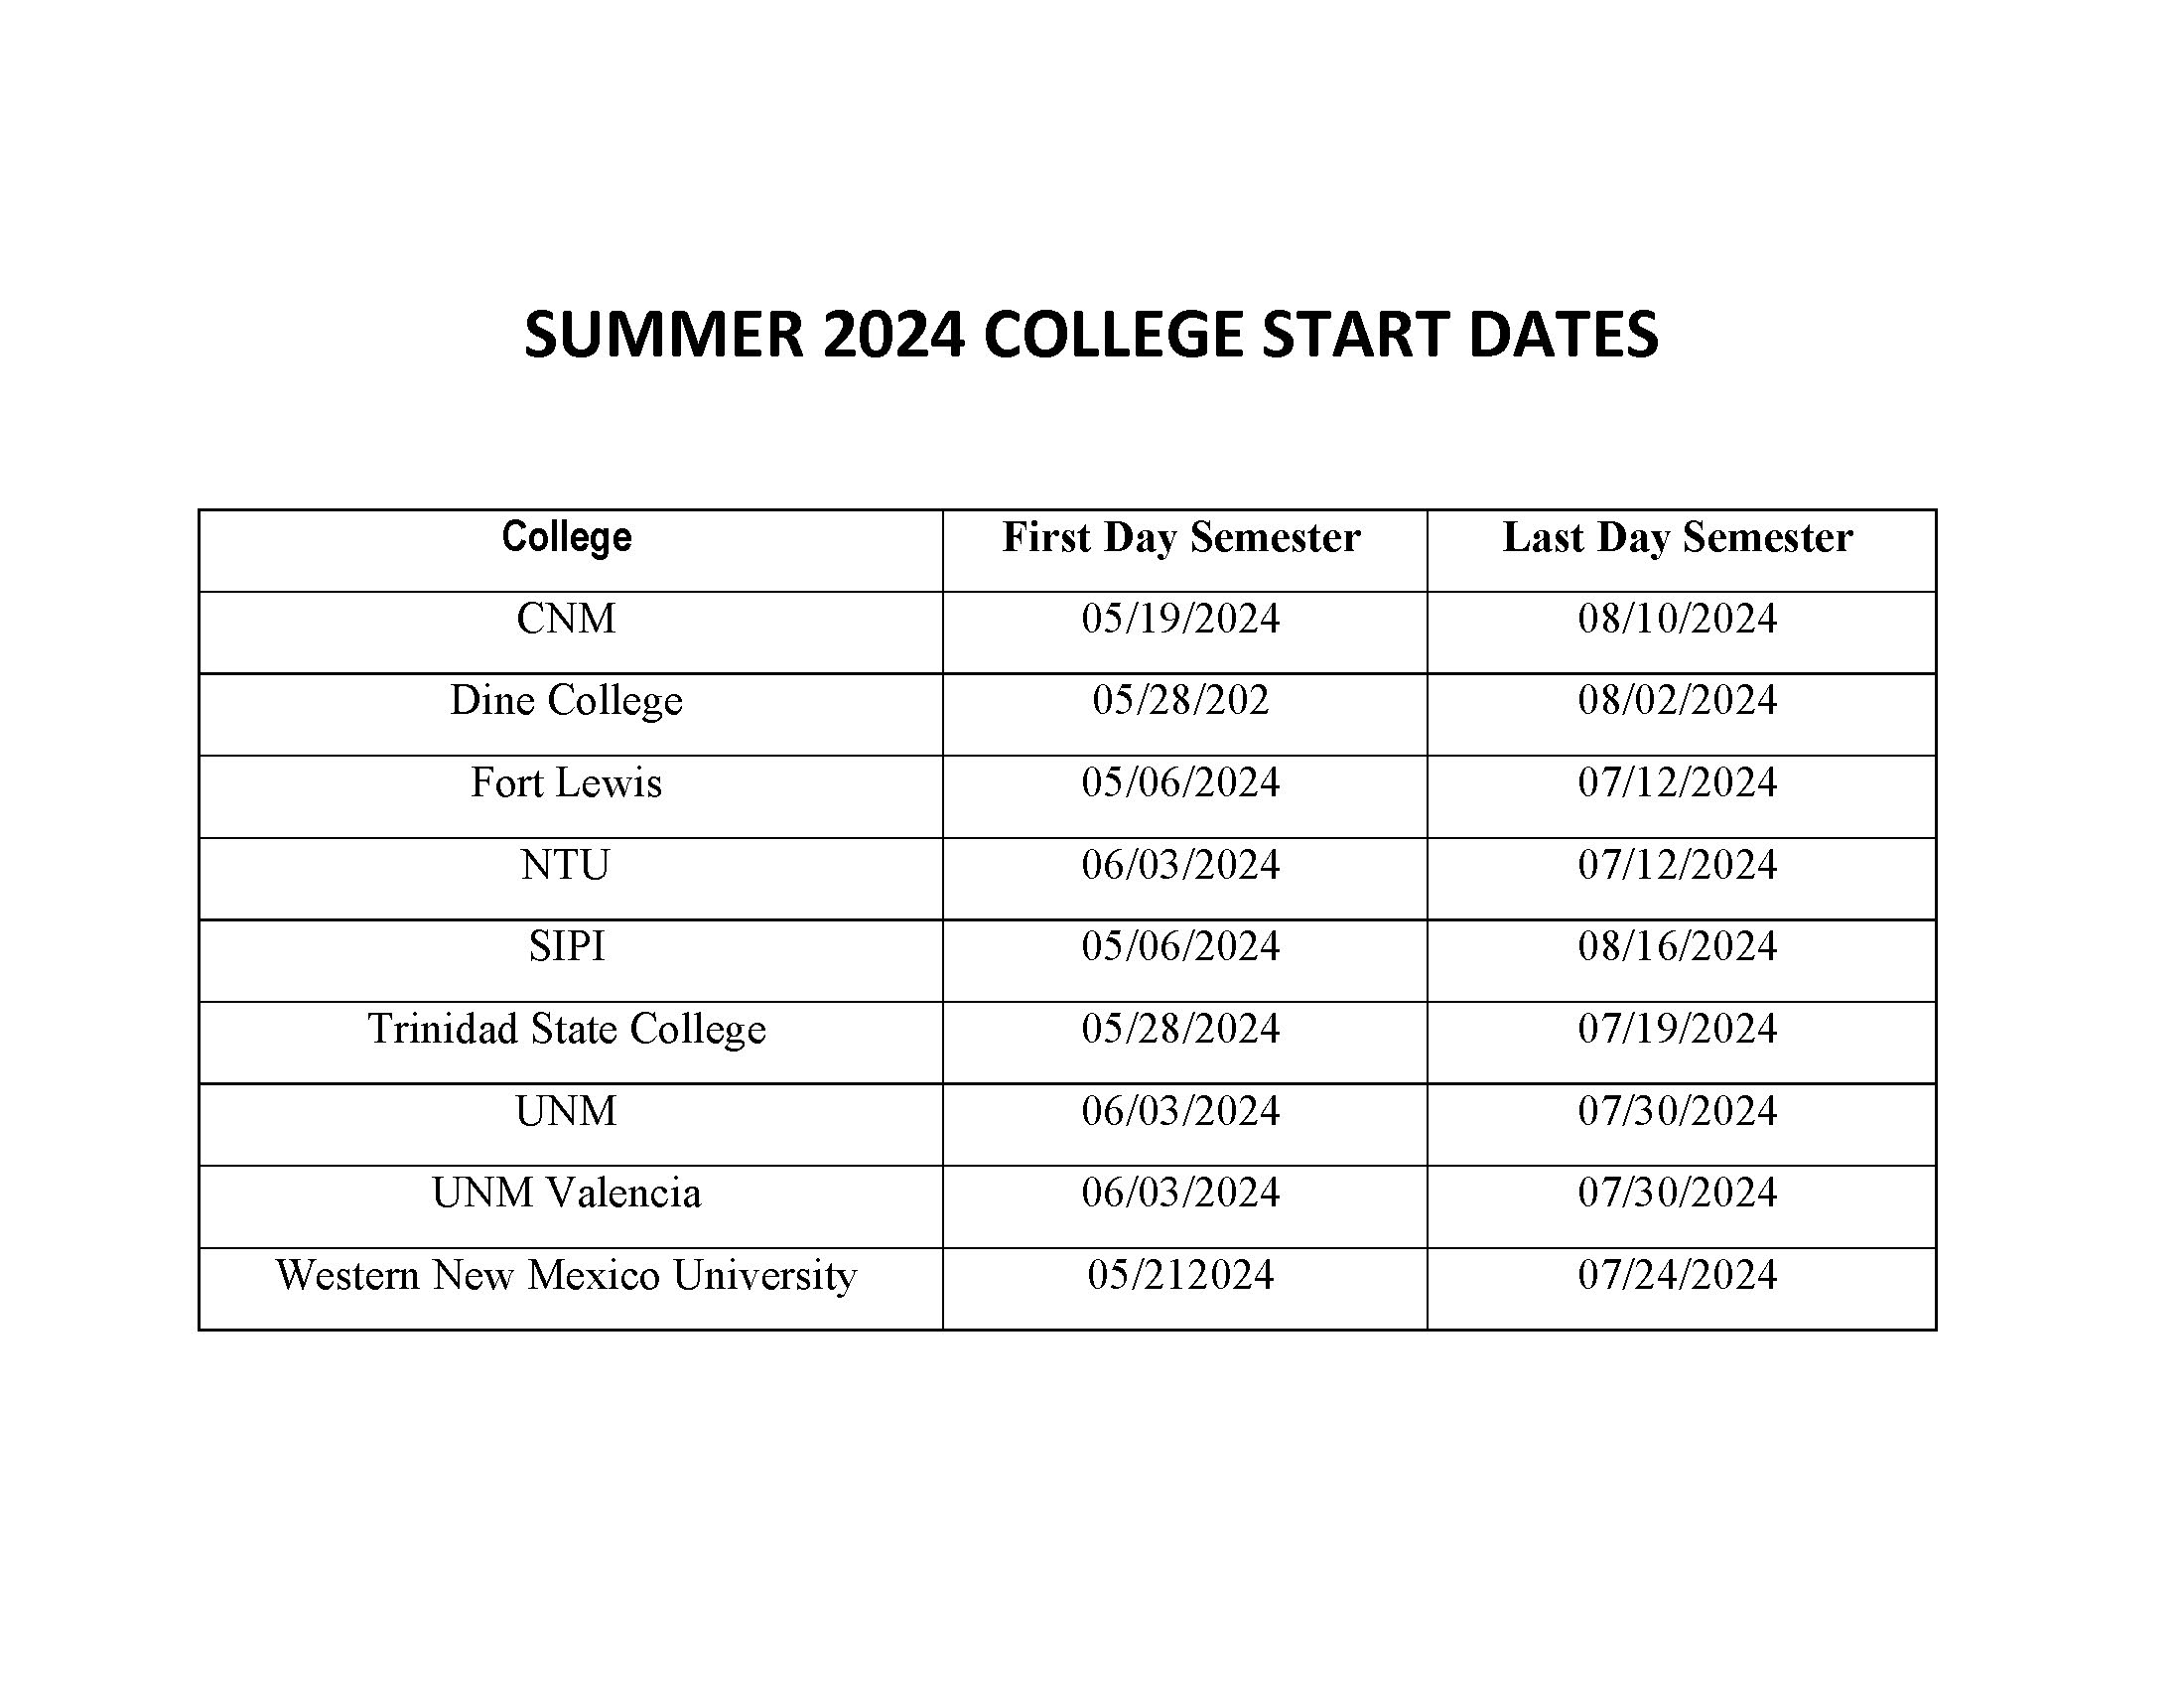 College start dates